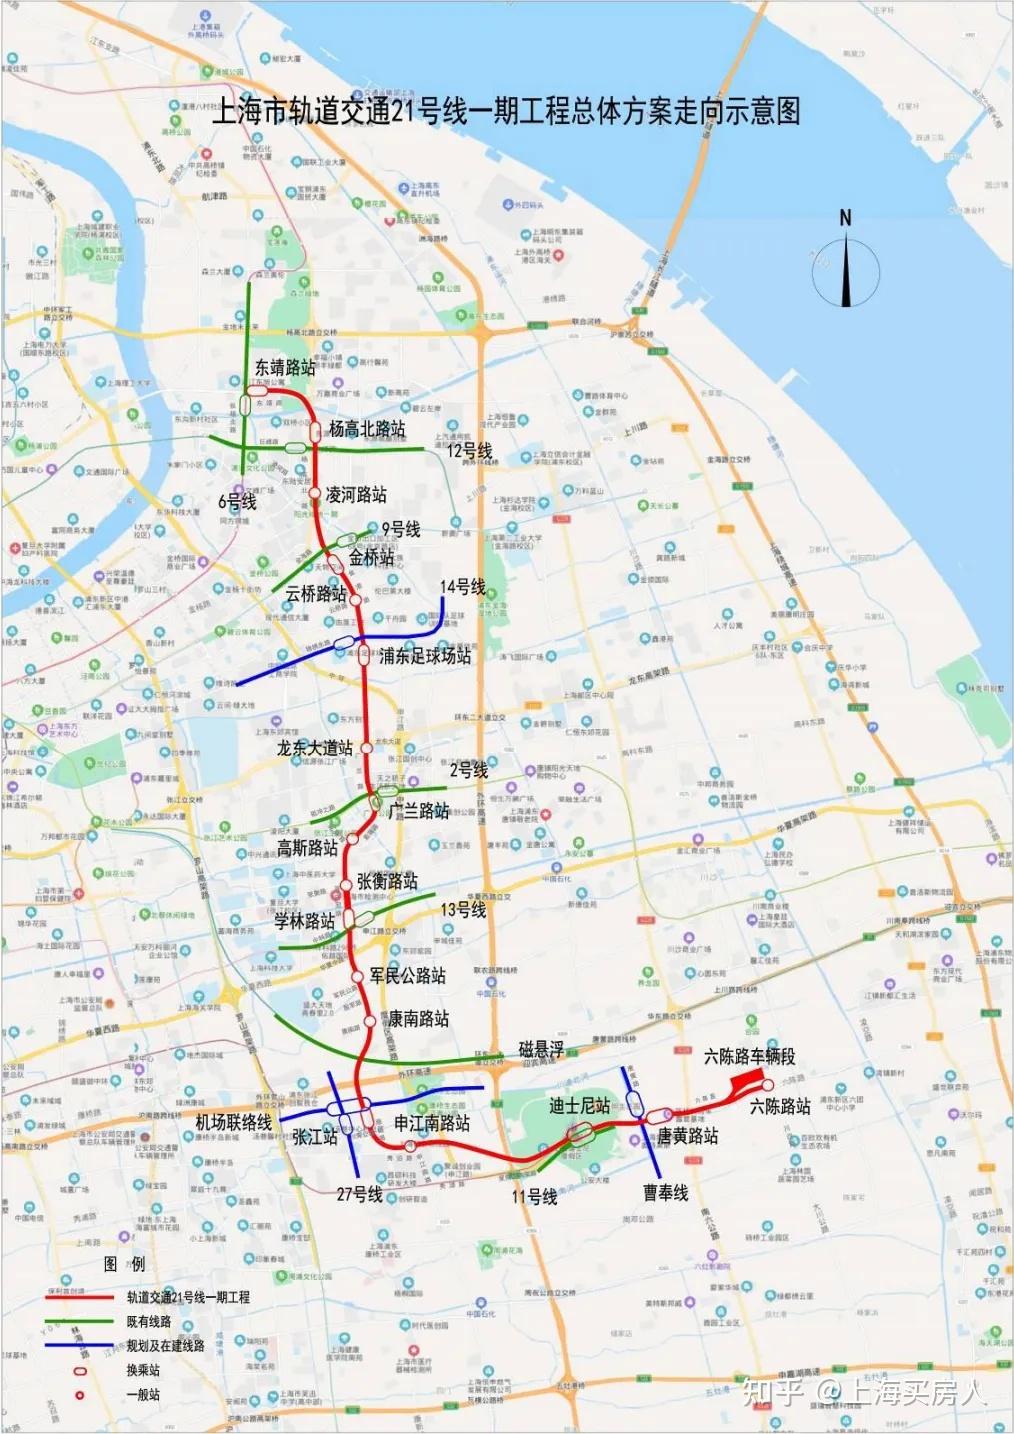 上海轨交21号线一期,起于六陈路站,终于东靖路站,线路主要沿六陈路—